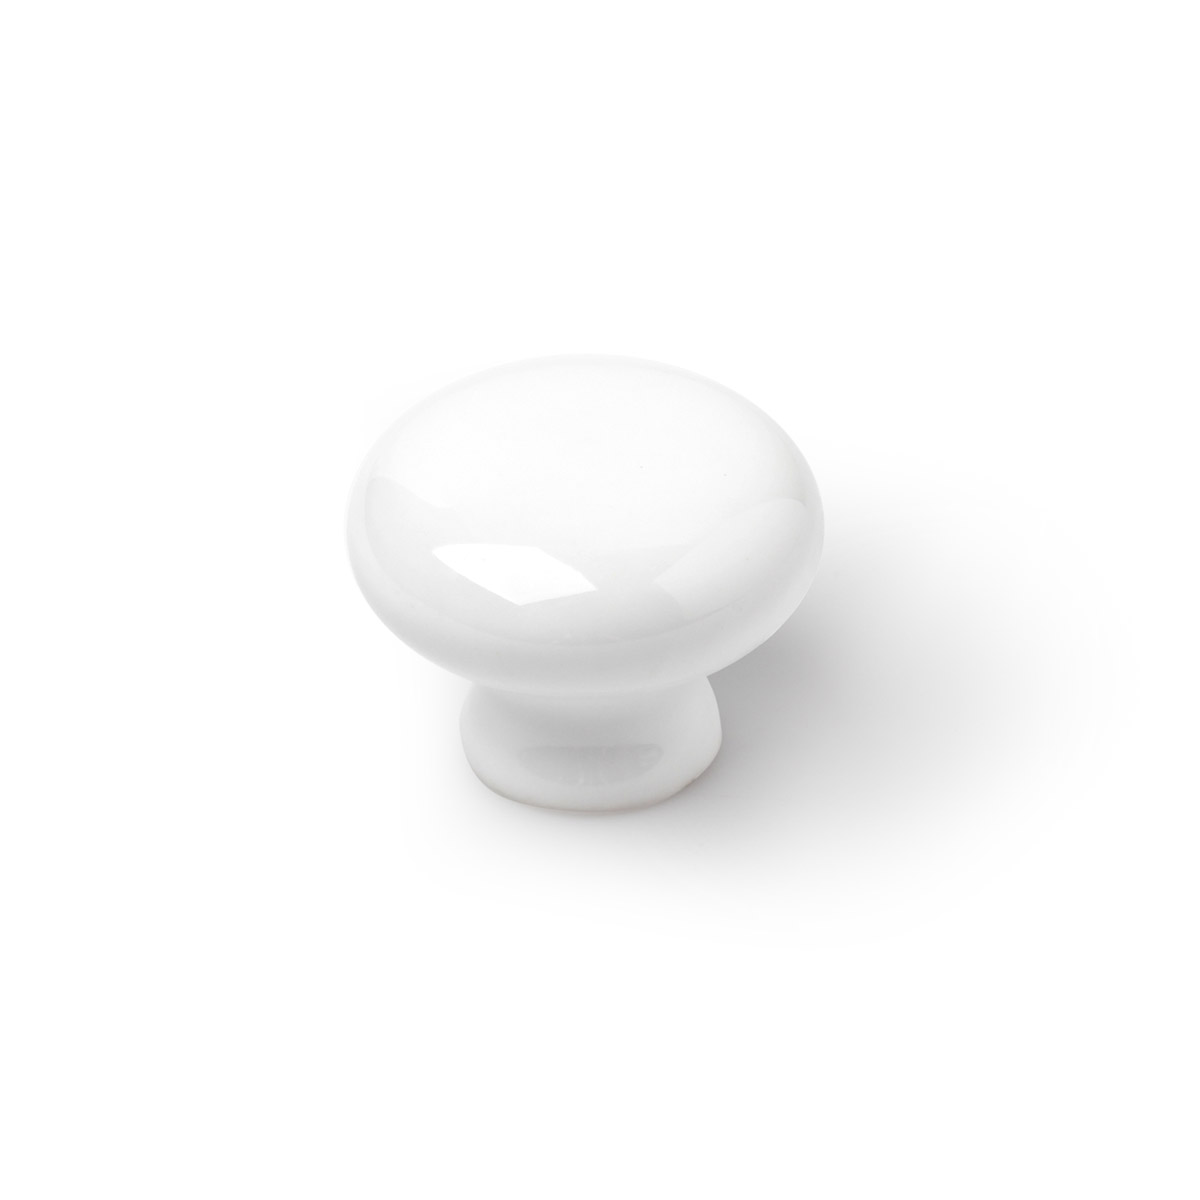 Sac avec 6 boutons en porcelaine blanche, dimensions: 35x35x26mm, Ø: 35 mm